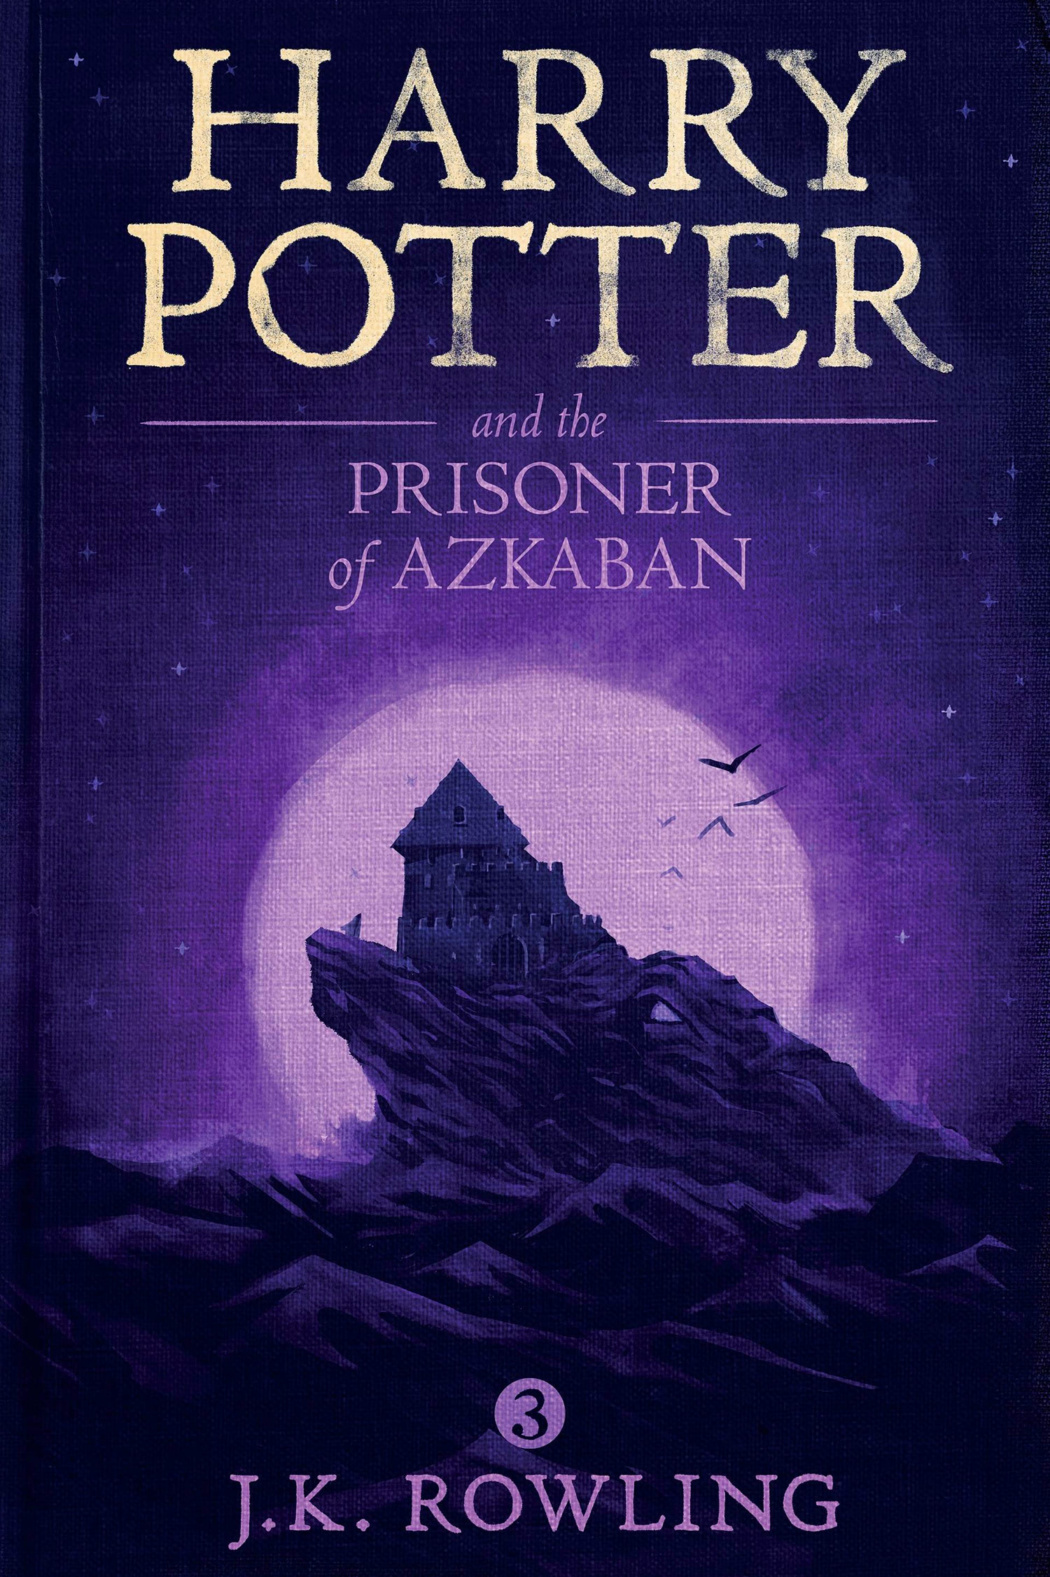 prisoner-of-azkaban-cover-art-harry-potter-fan-zone